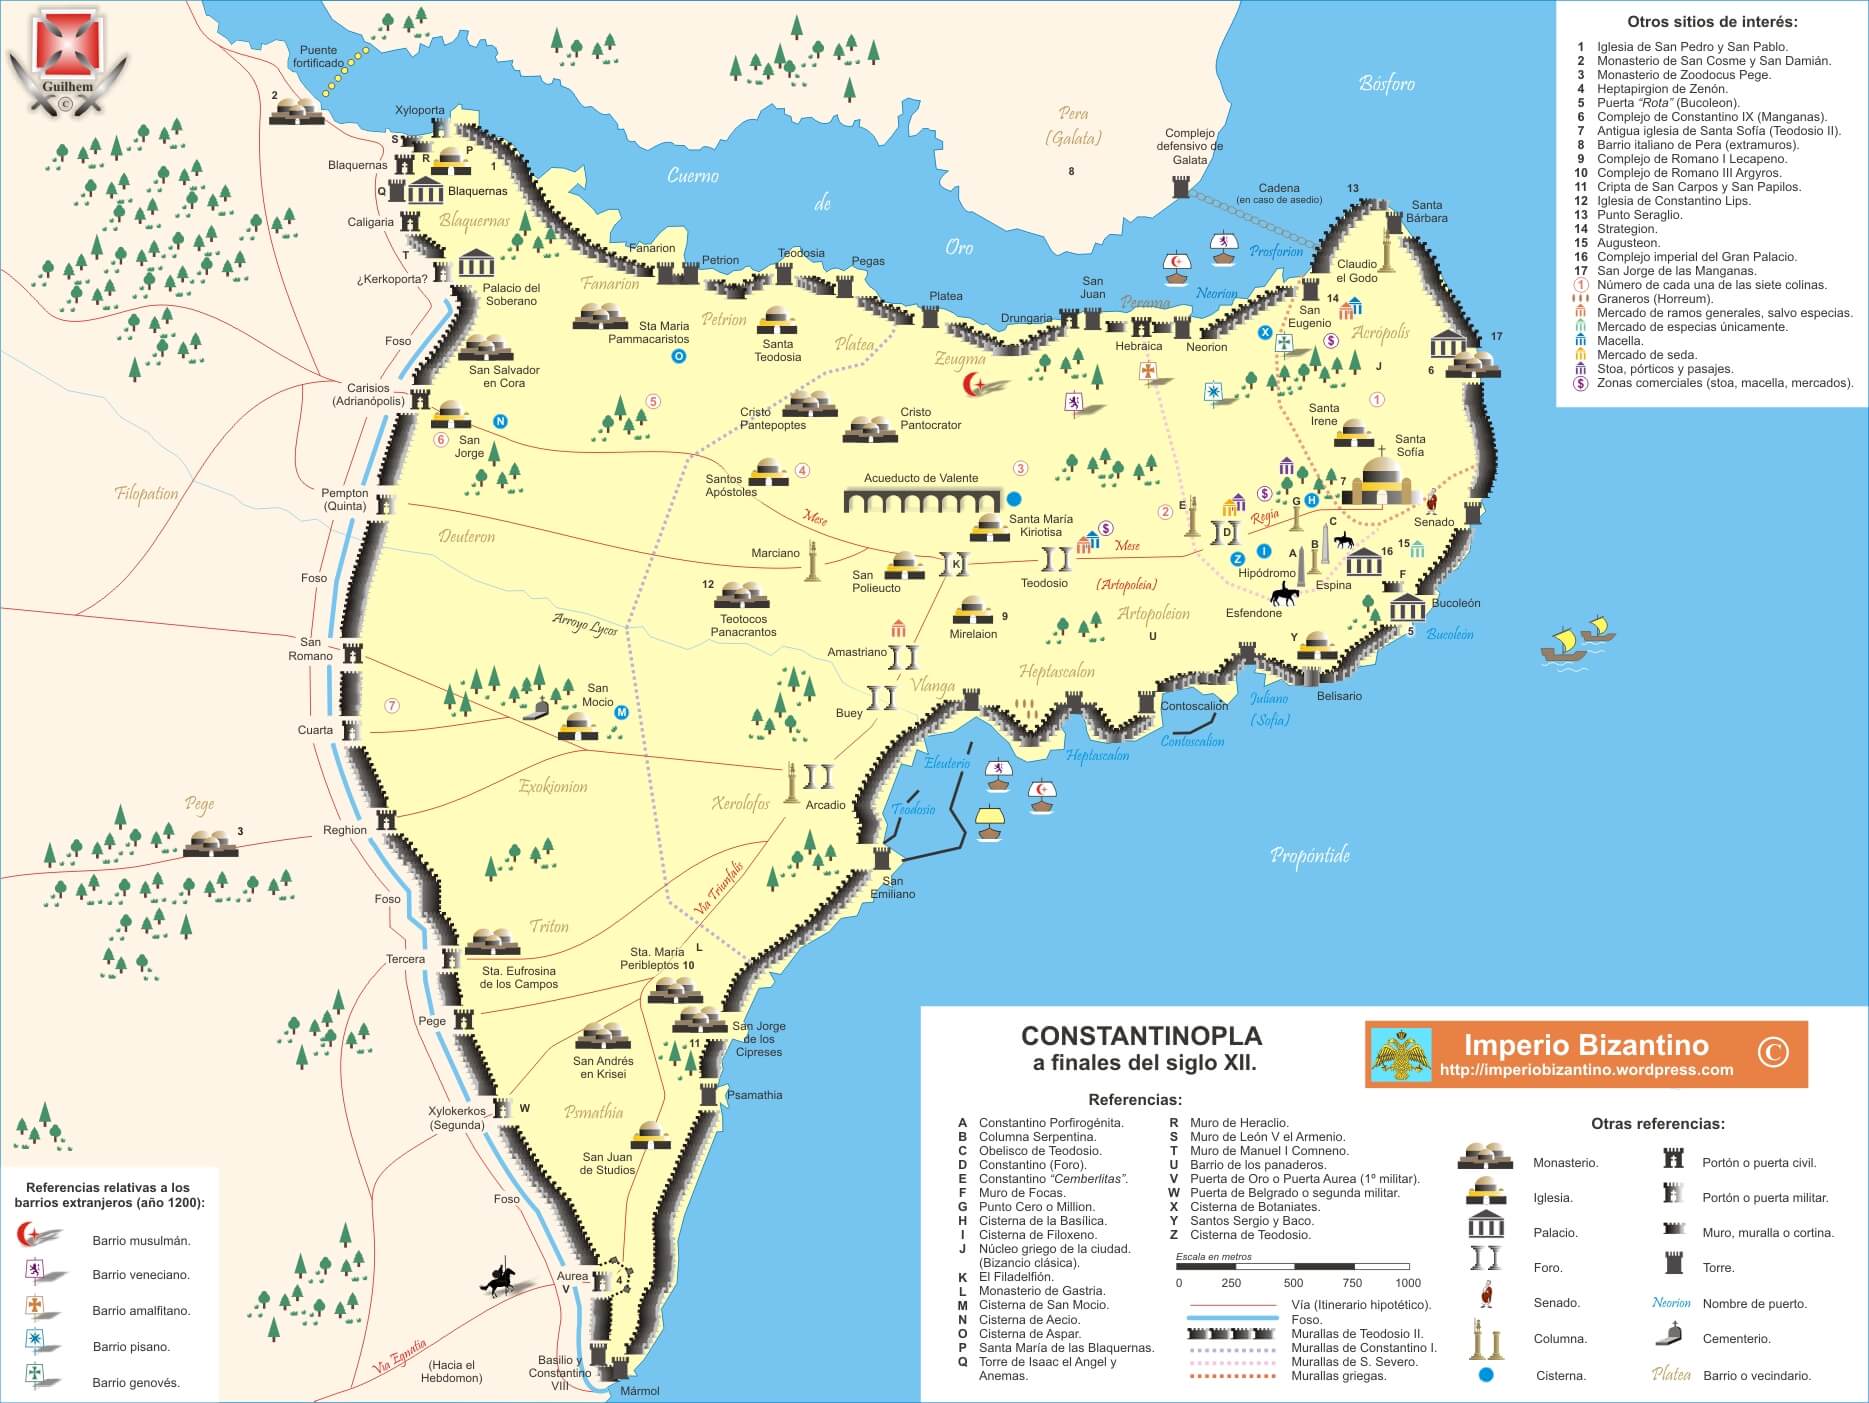 Constantinopla bajo el reinado de los Comnenos (1081-1185)